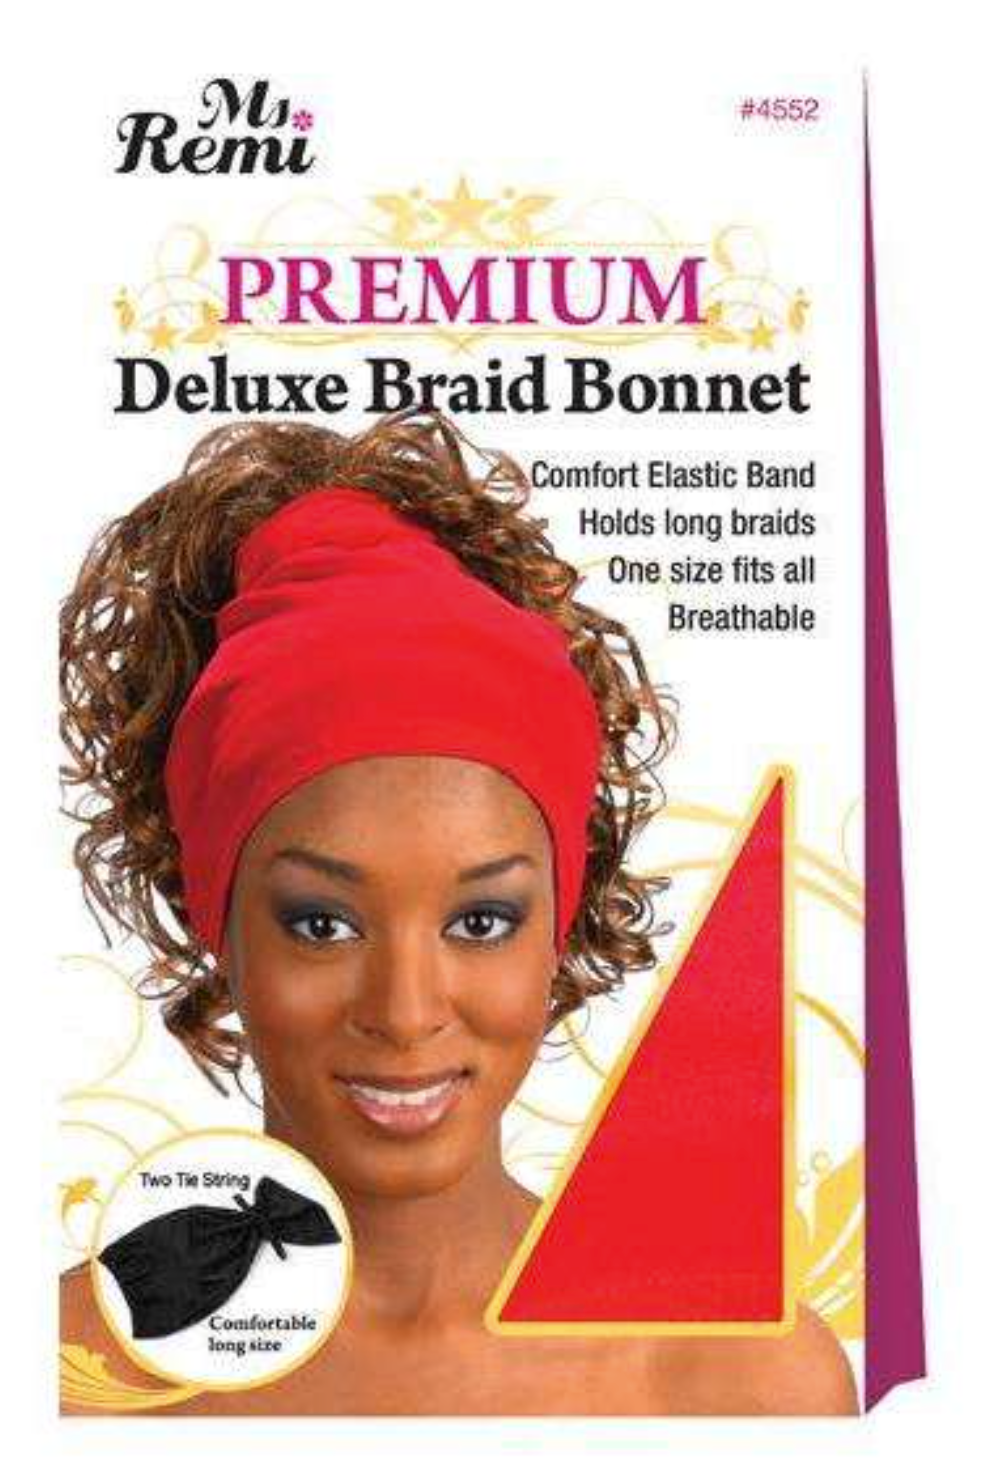 Annie Ms. Remi Deluxe Braid Bonnet Asst Color 04552